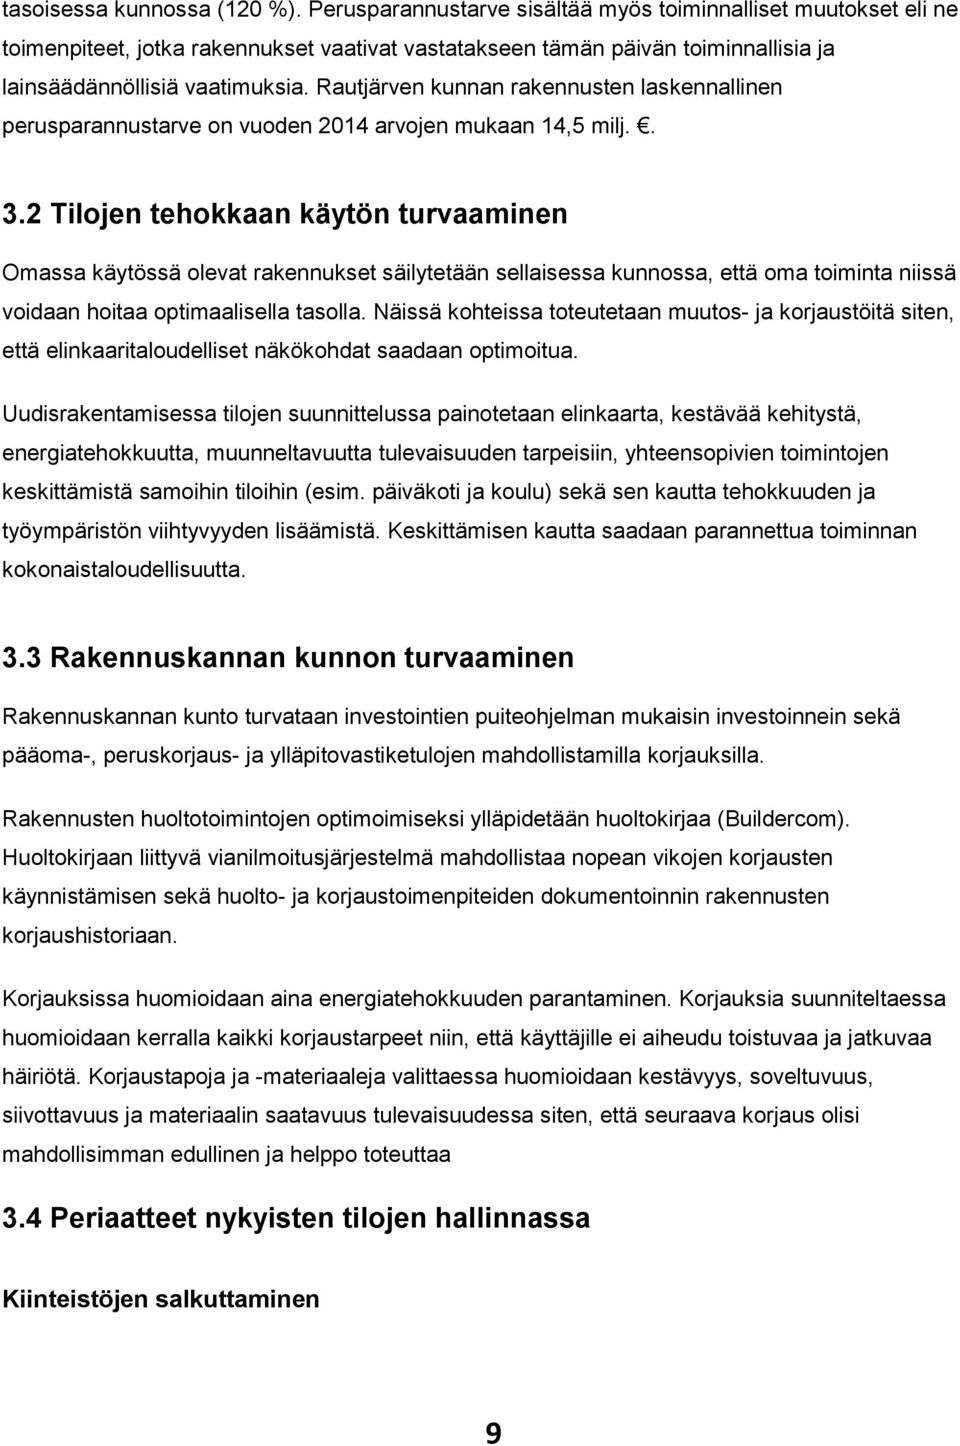 Rautjärven kunnan rakennusten laskennallinen perusparannustarve on vuoden 2014 arvojen mukaan 14,5 milj.. 3.